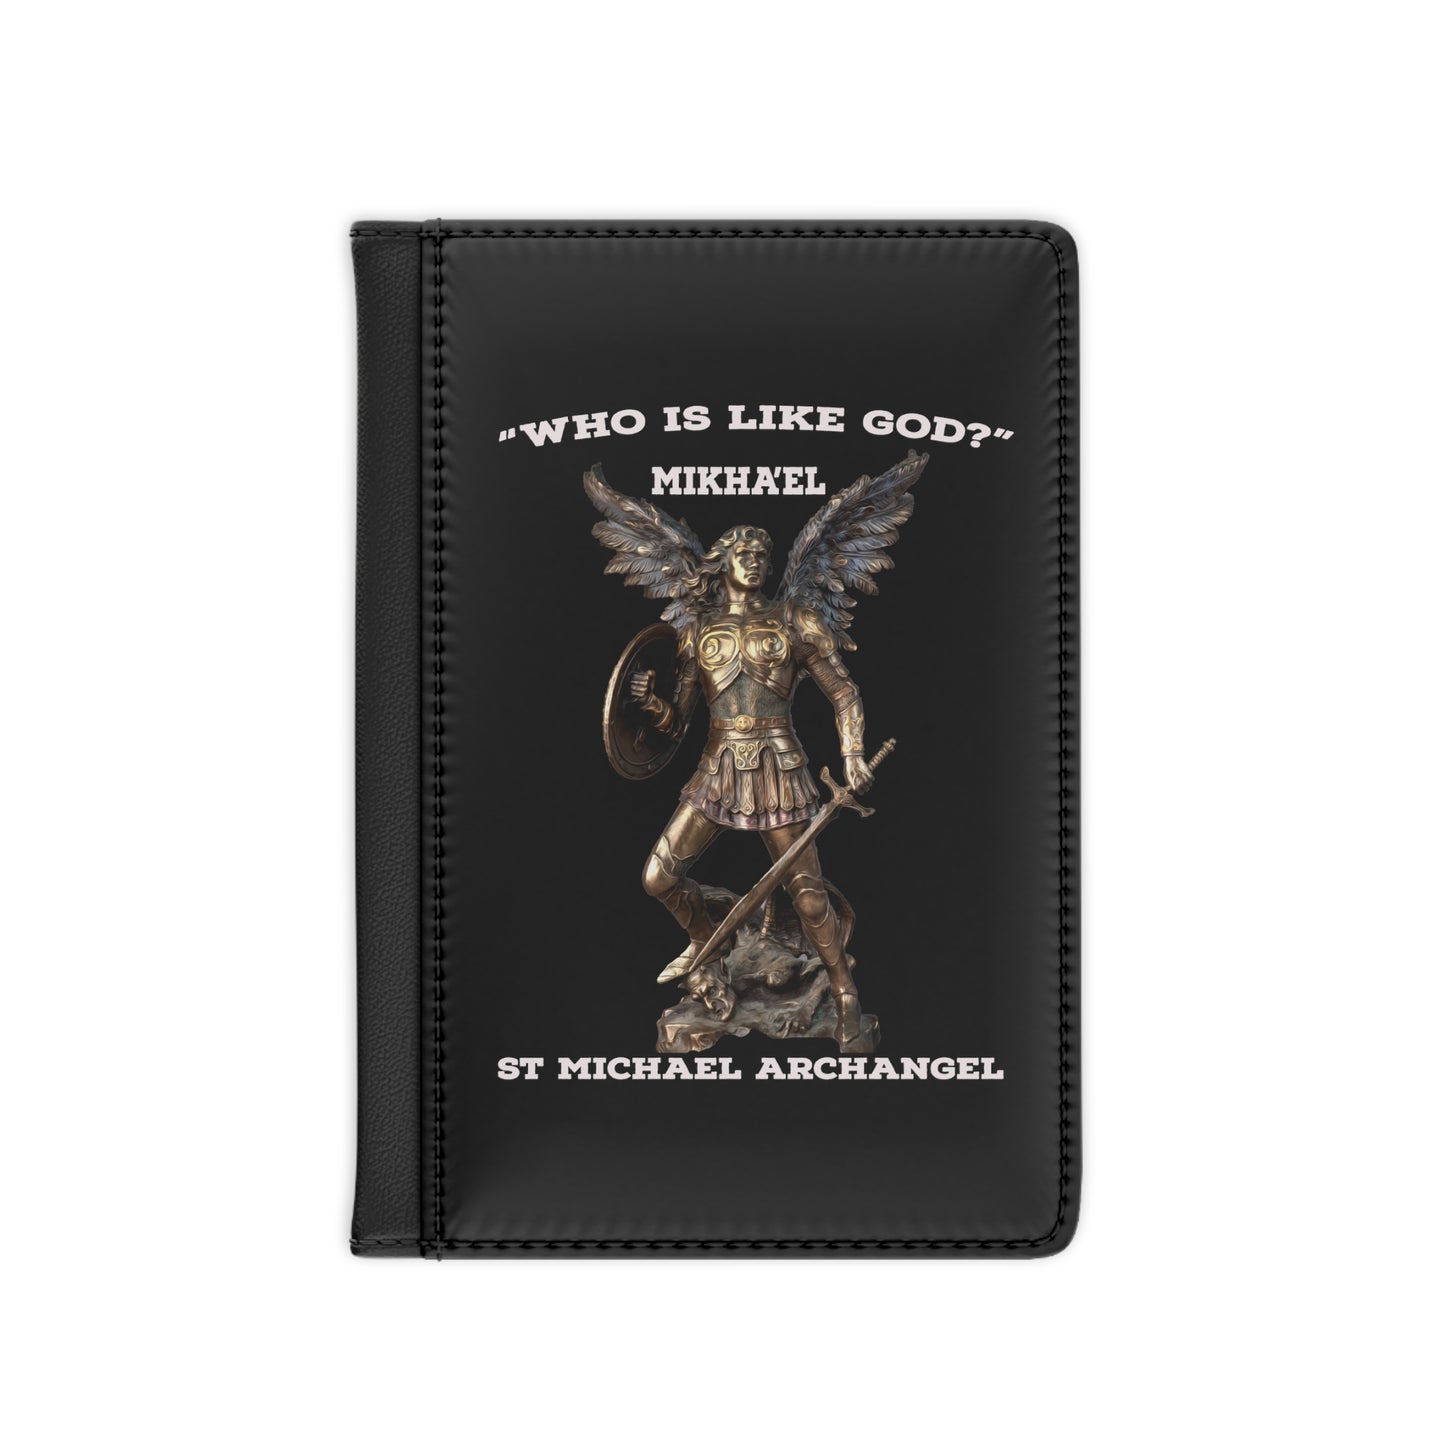 St Michael Archangel Mikhael Passport Cover